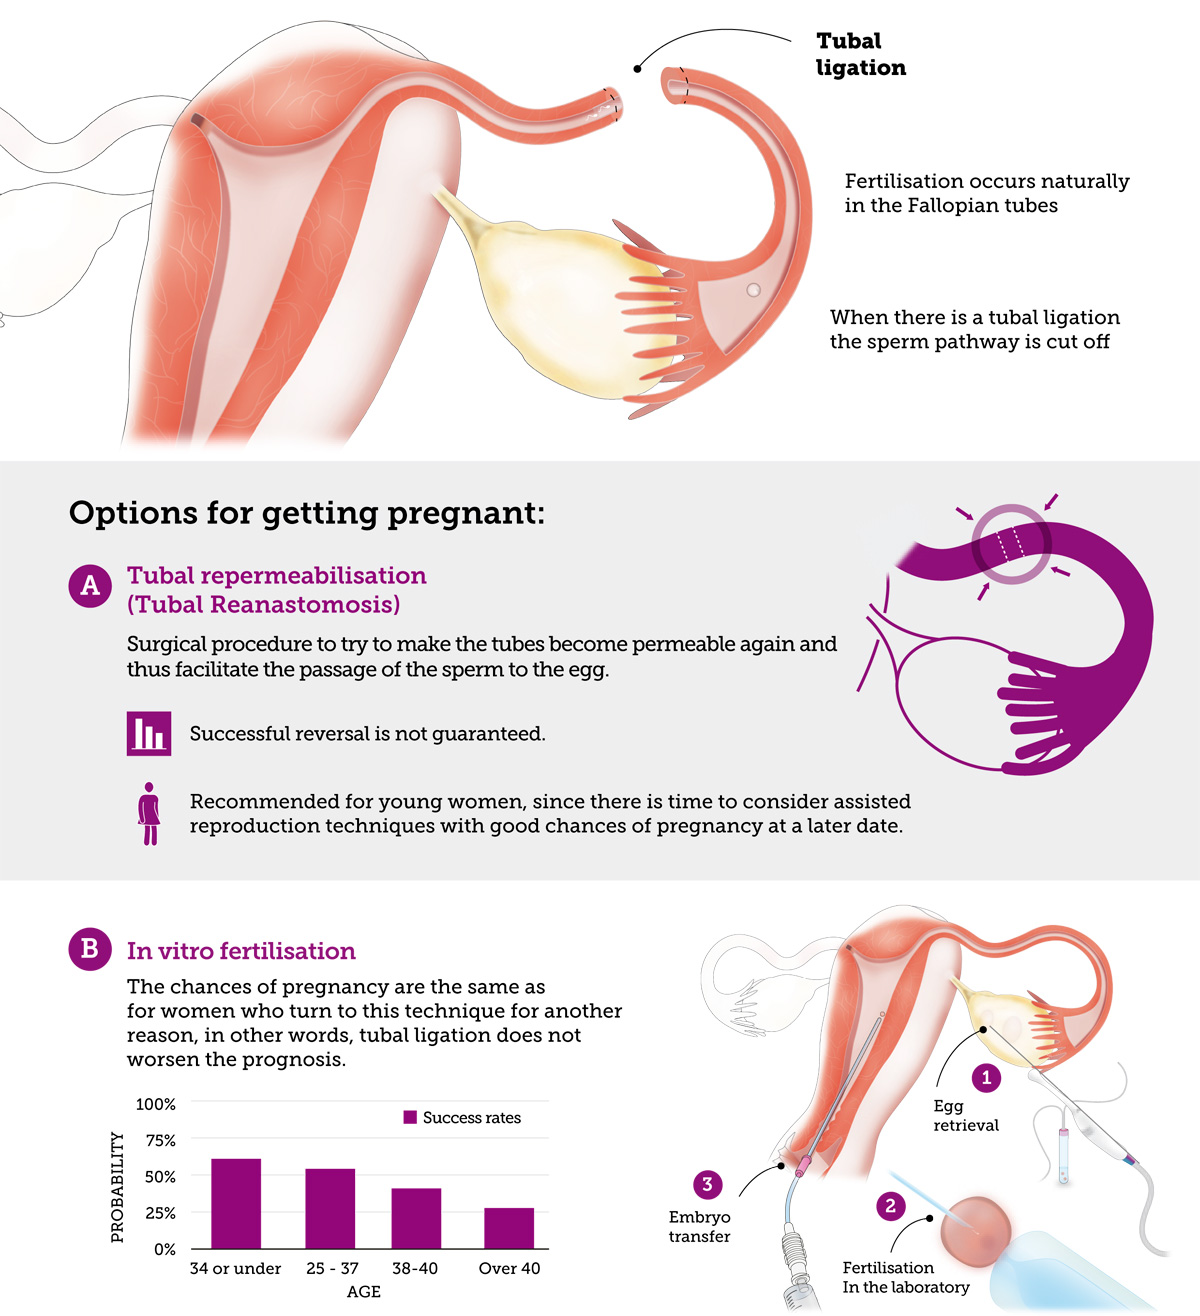 інфографіка про шанси завагітніти при стерилізації маткових труб